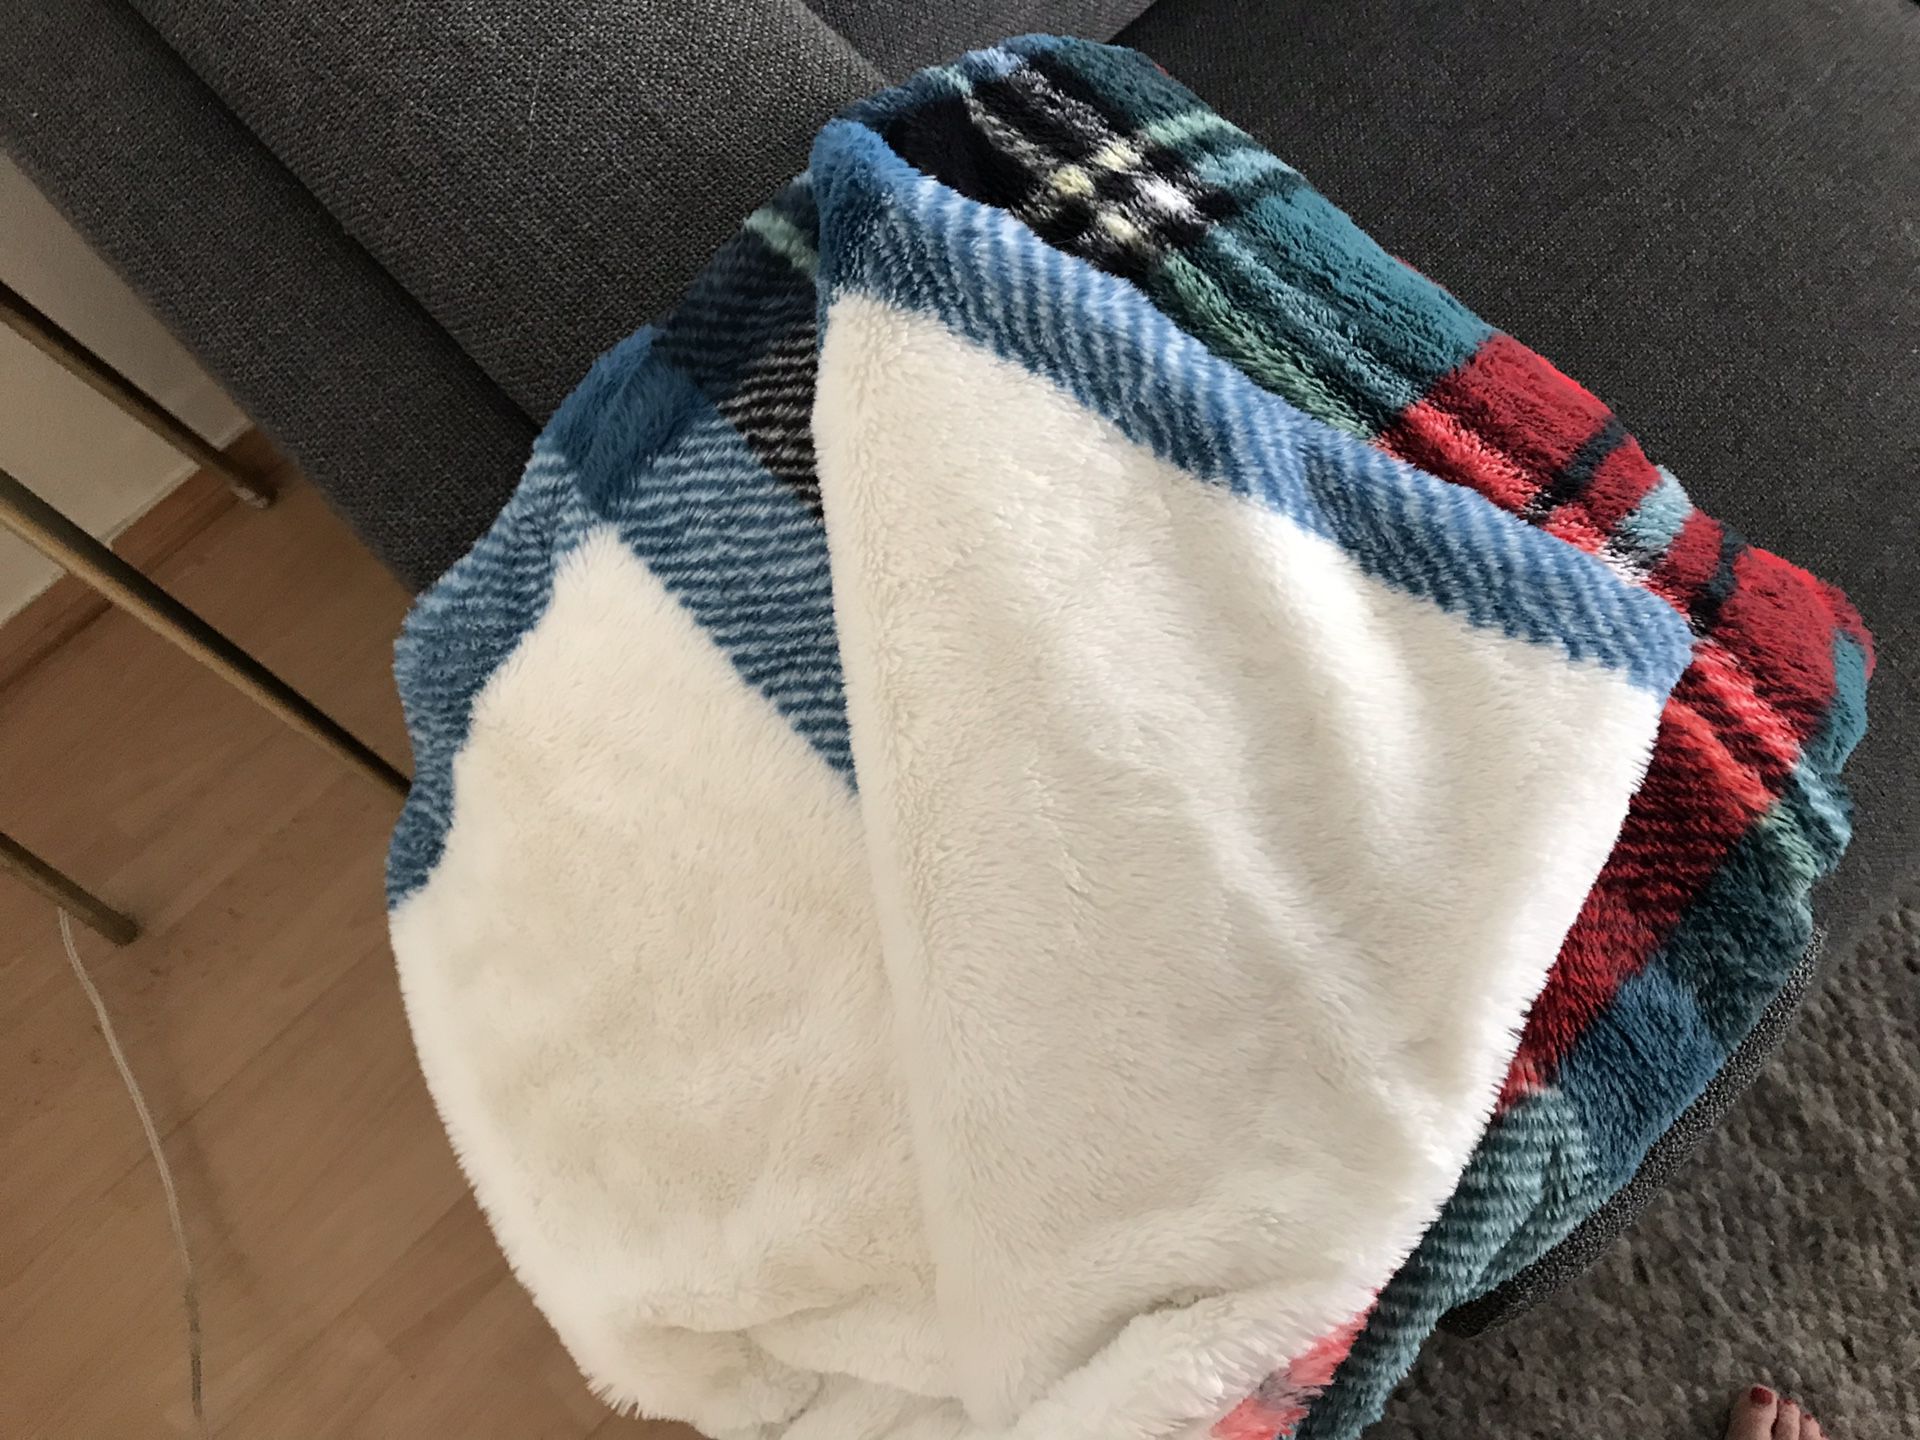 Cozy plaid print blanket